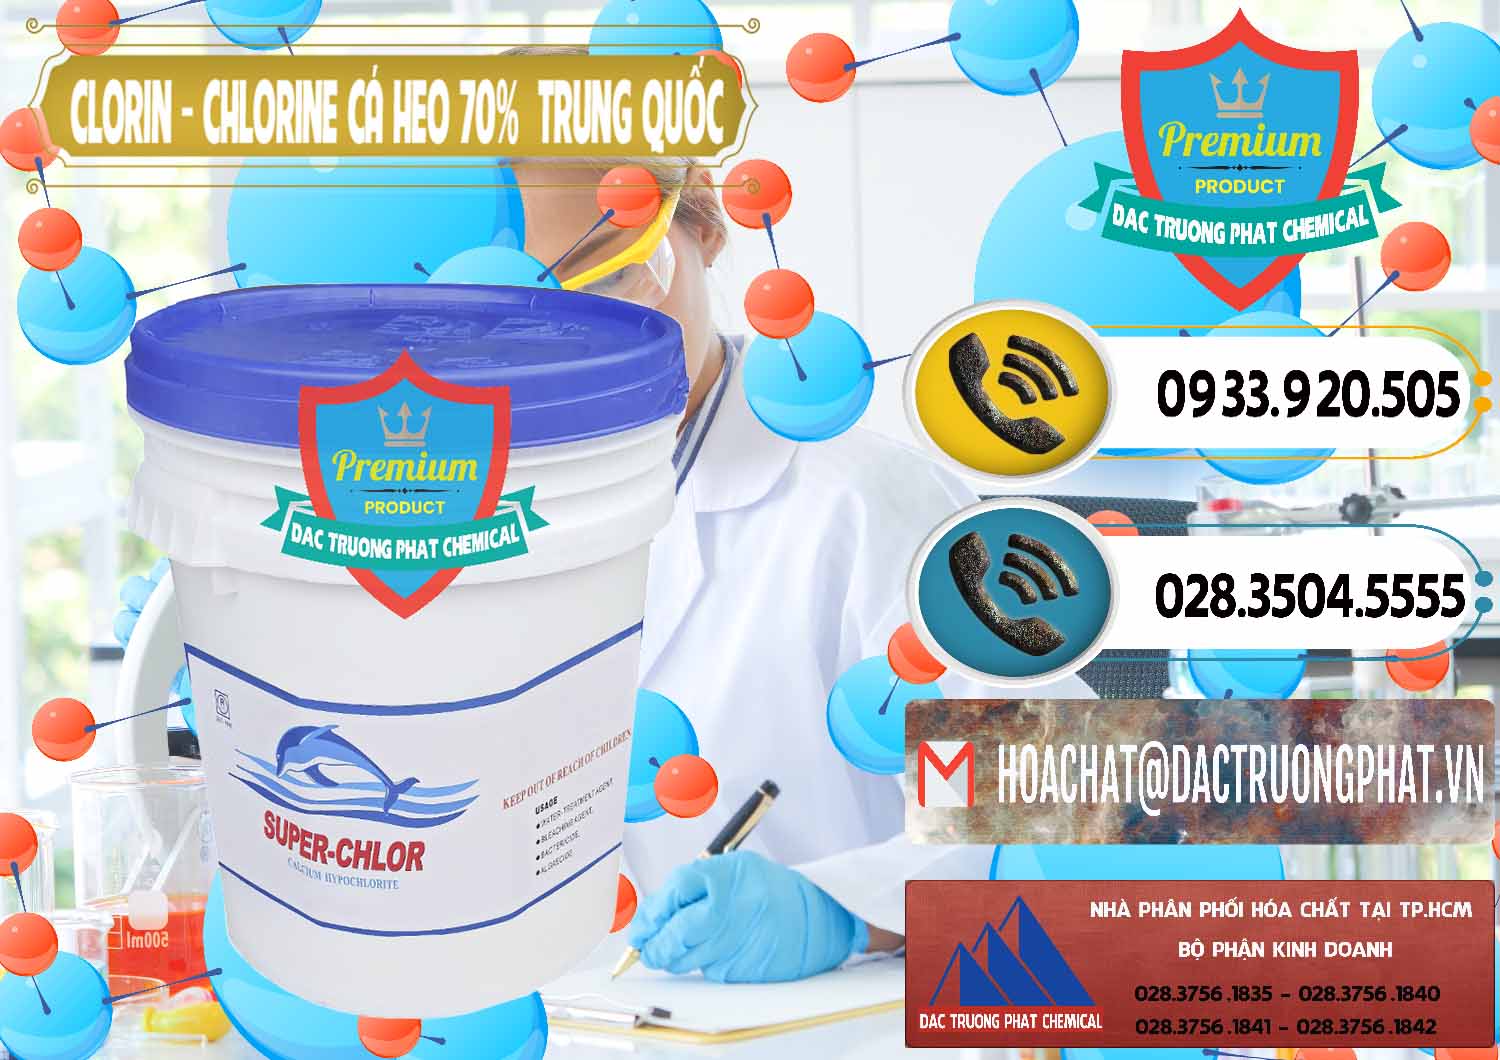 Nơi chuyên cung ứng - bán Clorin - Chlorine Cá Heo 70% Super Chlor Nắp Xanh Trung Quốc China - 0209 - Công ty chuyên kinh doanh và phân phối hóa chất tại TP.HCM - hoachatdetnhuom.vn